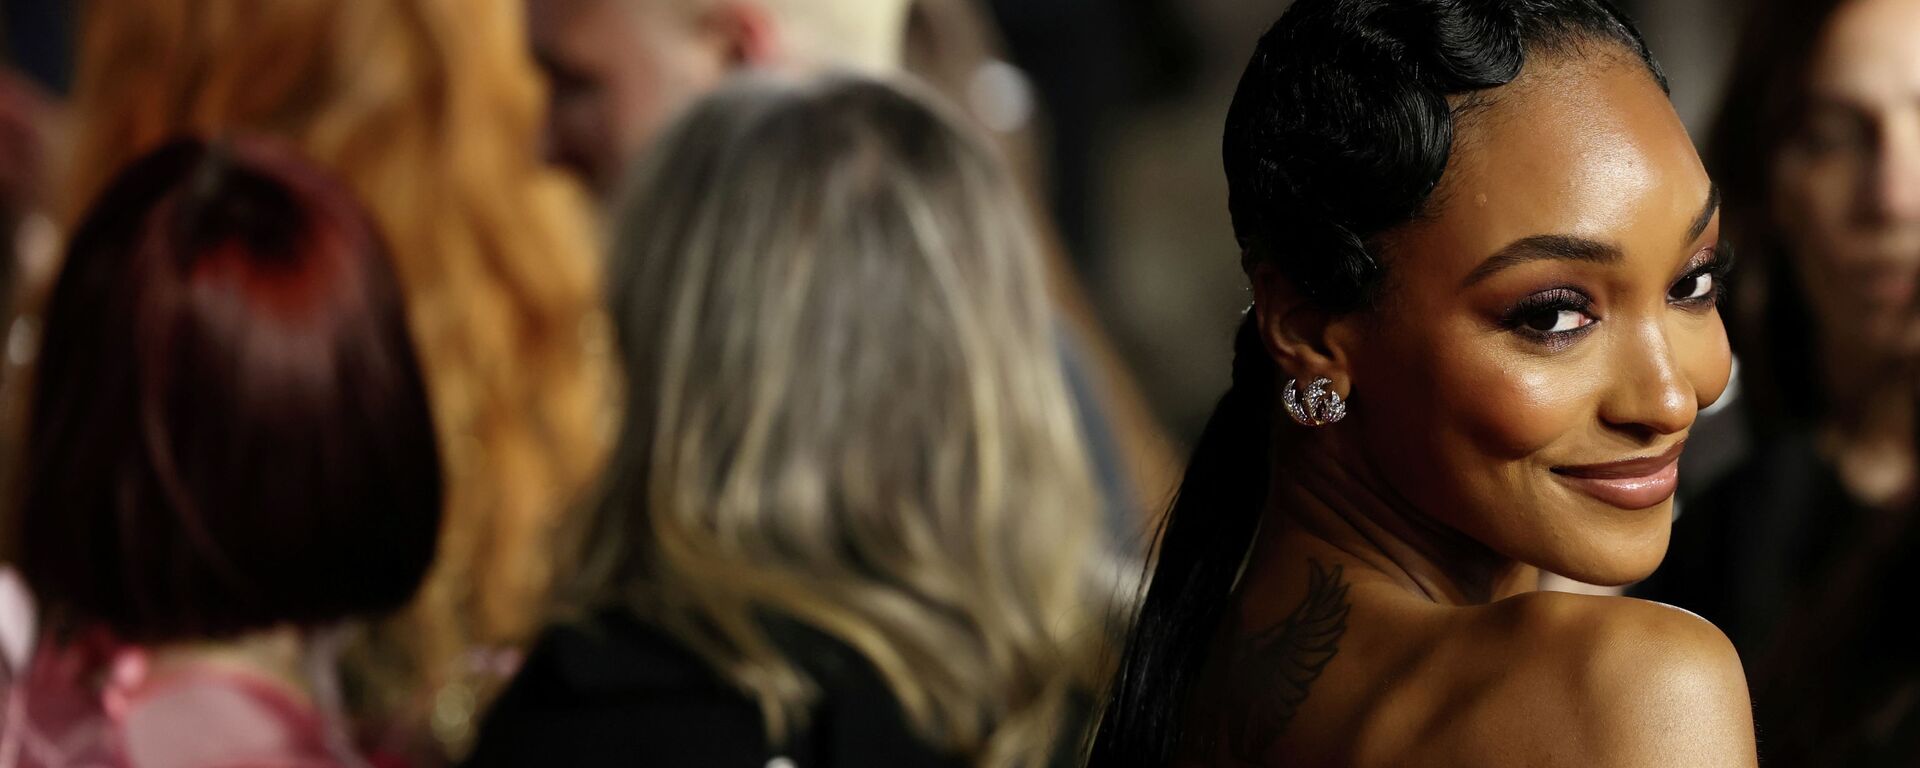 Британская модель Джордан Данн на красной дорожке церемонии Fashion Awards 2021 в Лондоне, Великобритания. 29 ноября 2021 года - Sputnik Кыргызстан, 1920, 06.12.2021